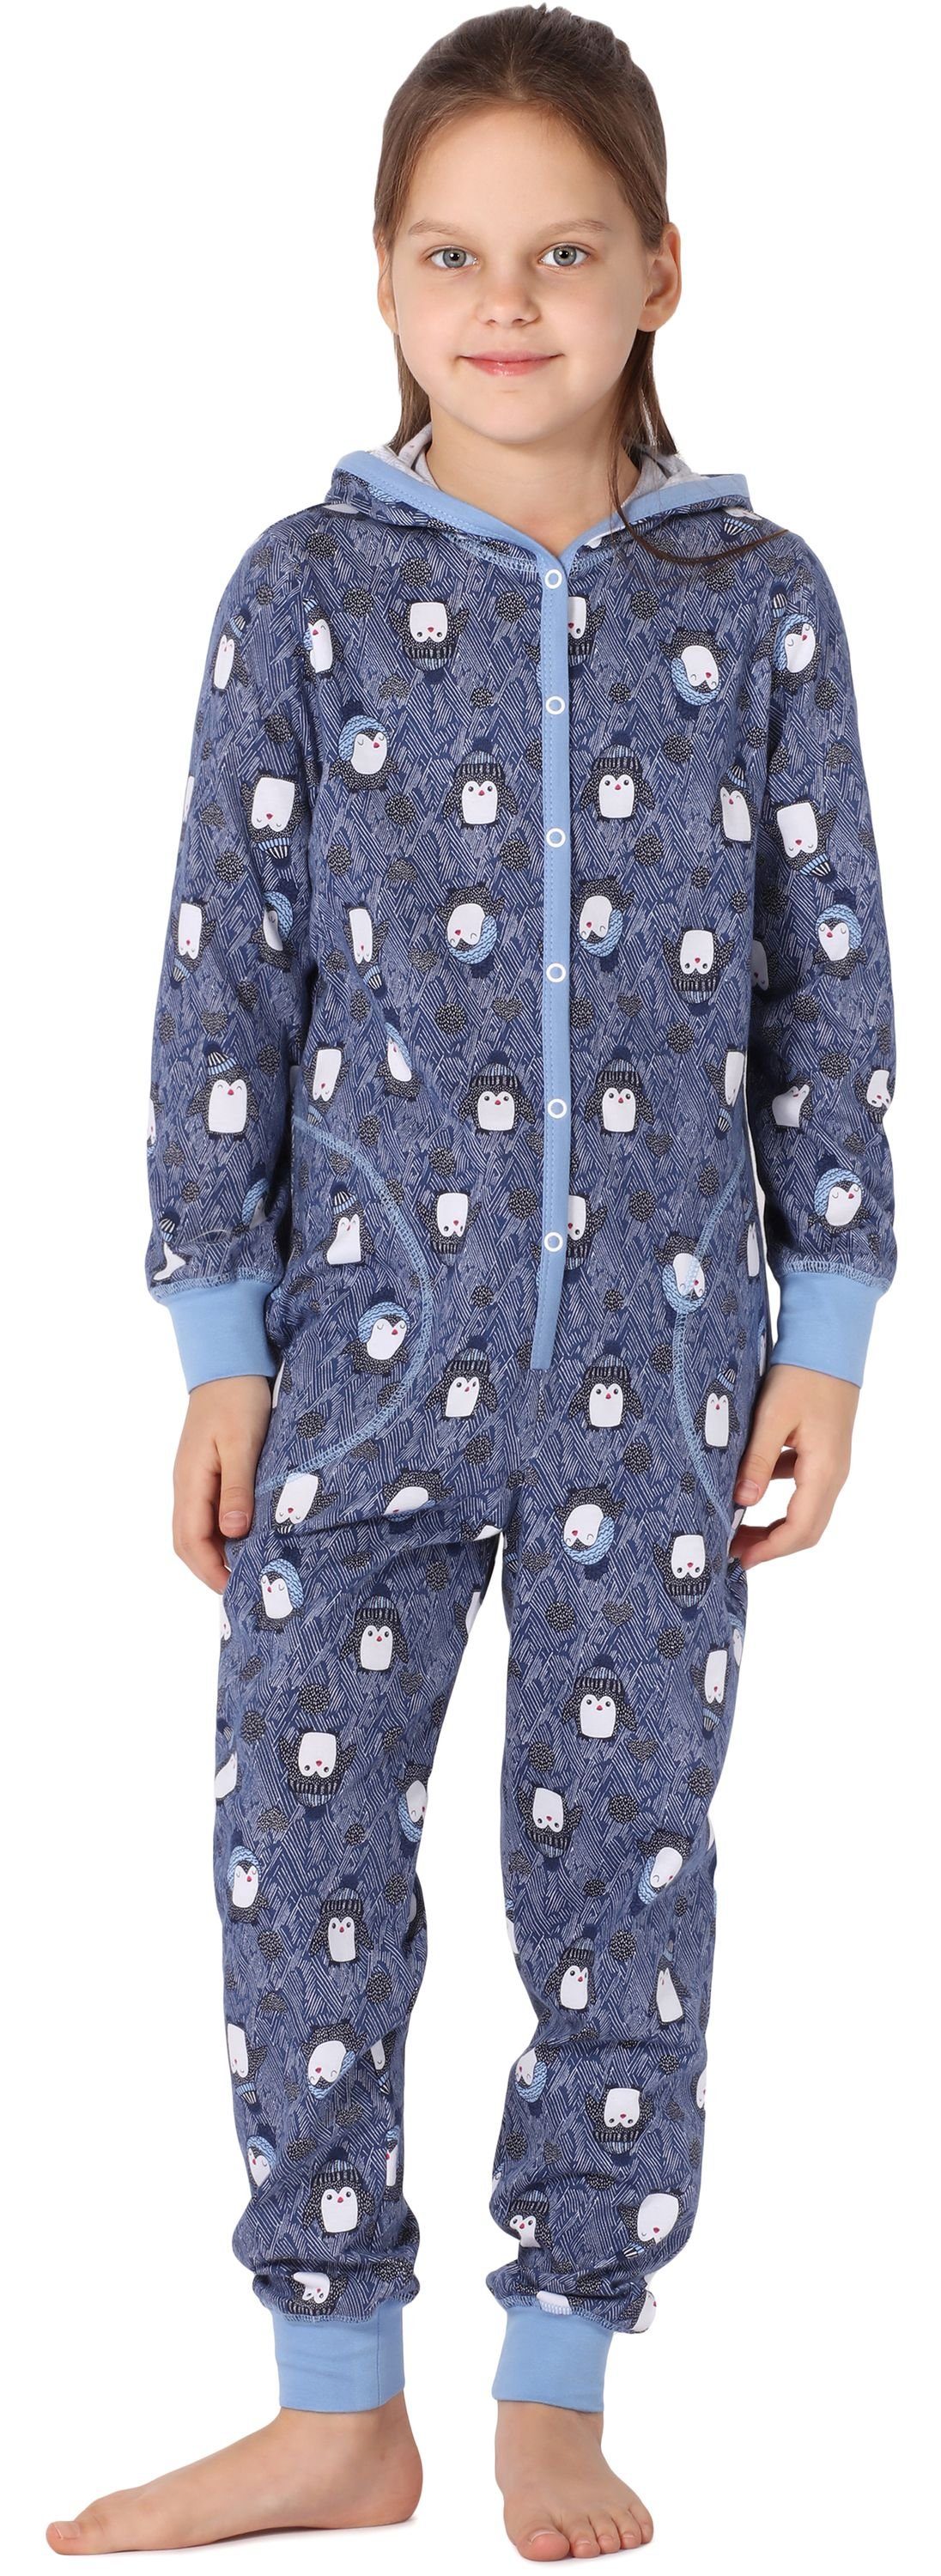 Blau MS10-223 Mädchen Style Kapuze Schlafoverall Merry Pinguine Schlafanzug mit